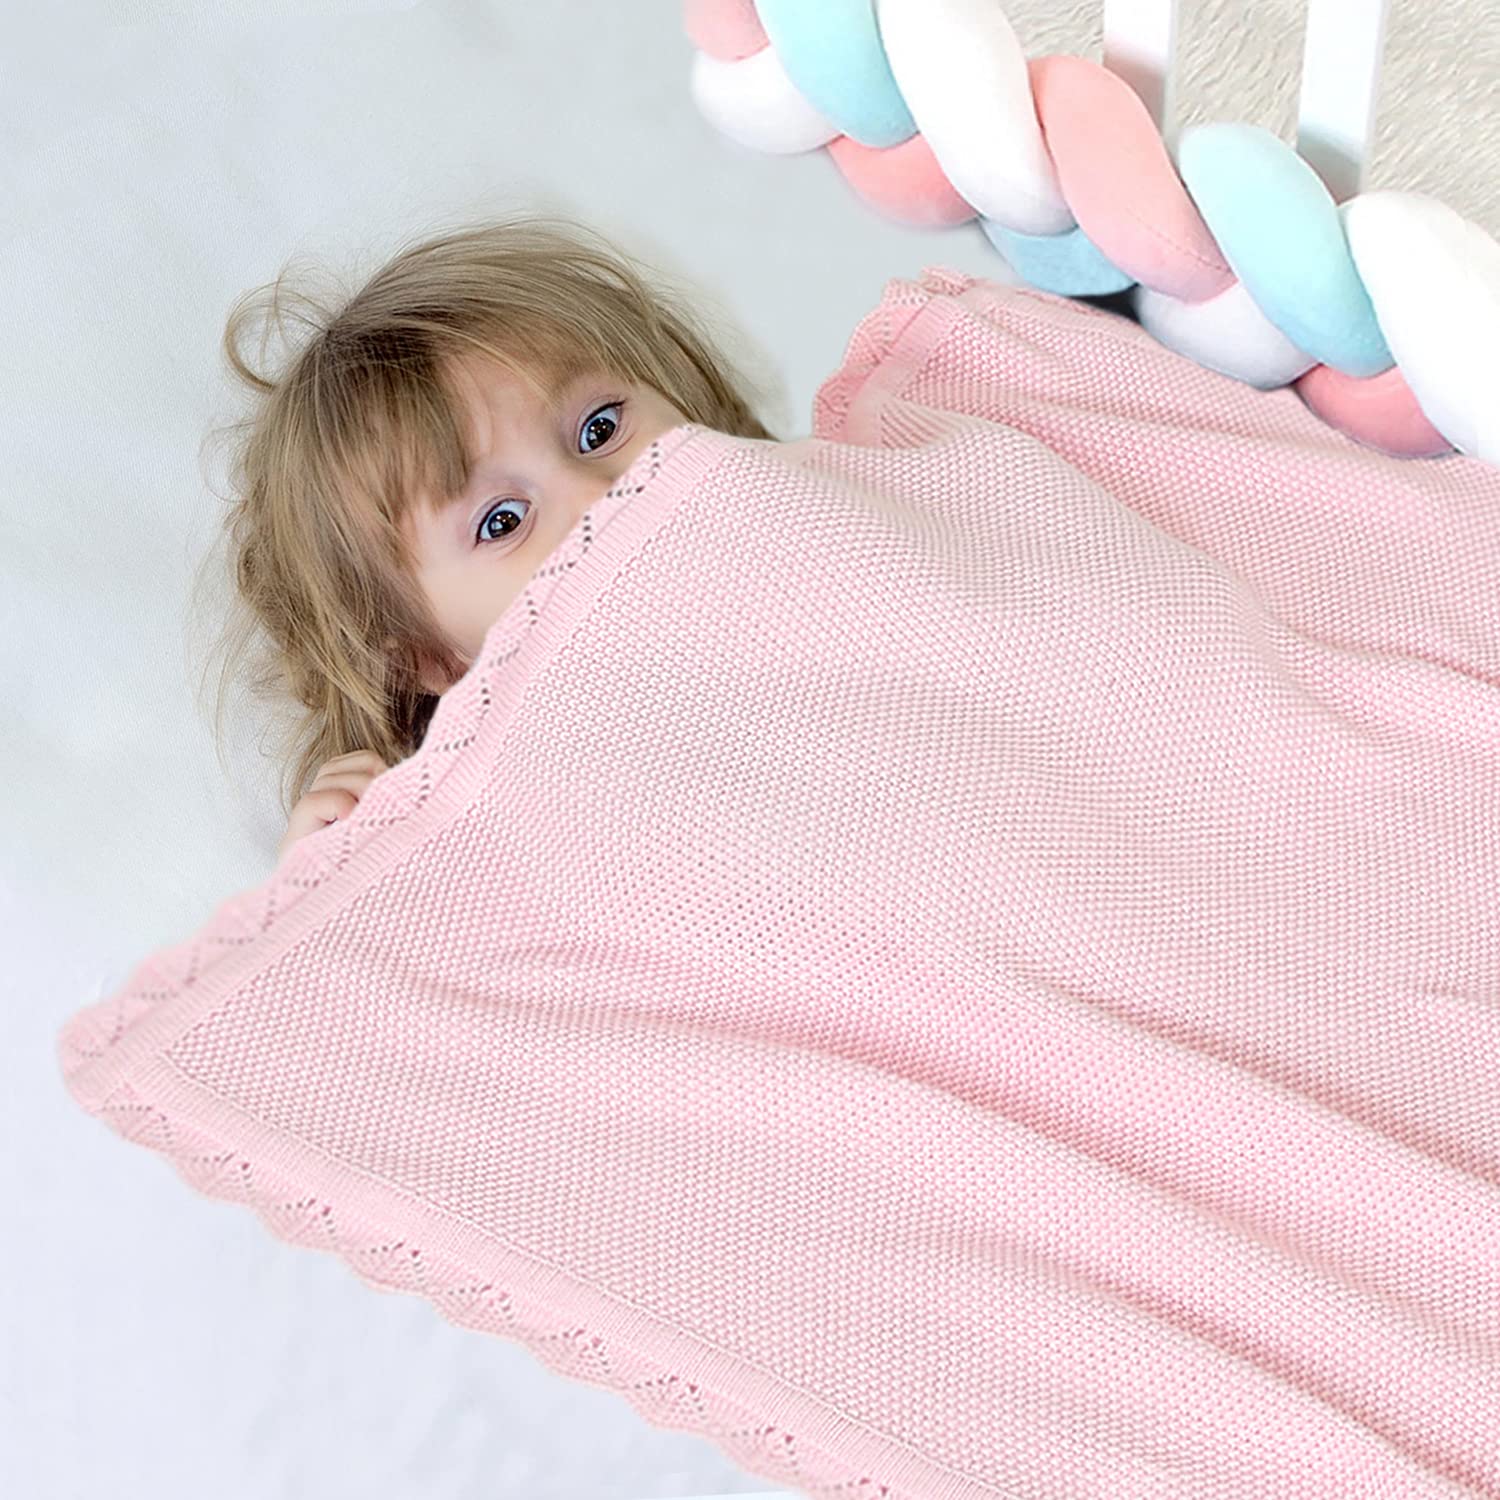 TRENDSTITCH 100% Cotton Baby Blanket Knit Soft Warm Lace Toddler Newborn Nursery Blanket,30 x 40 Inches, Light Pink